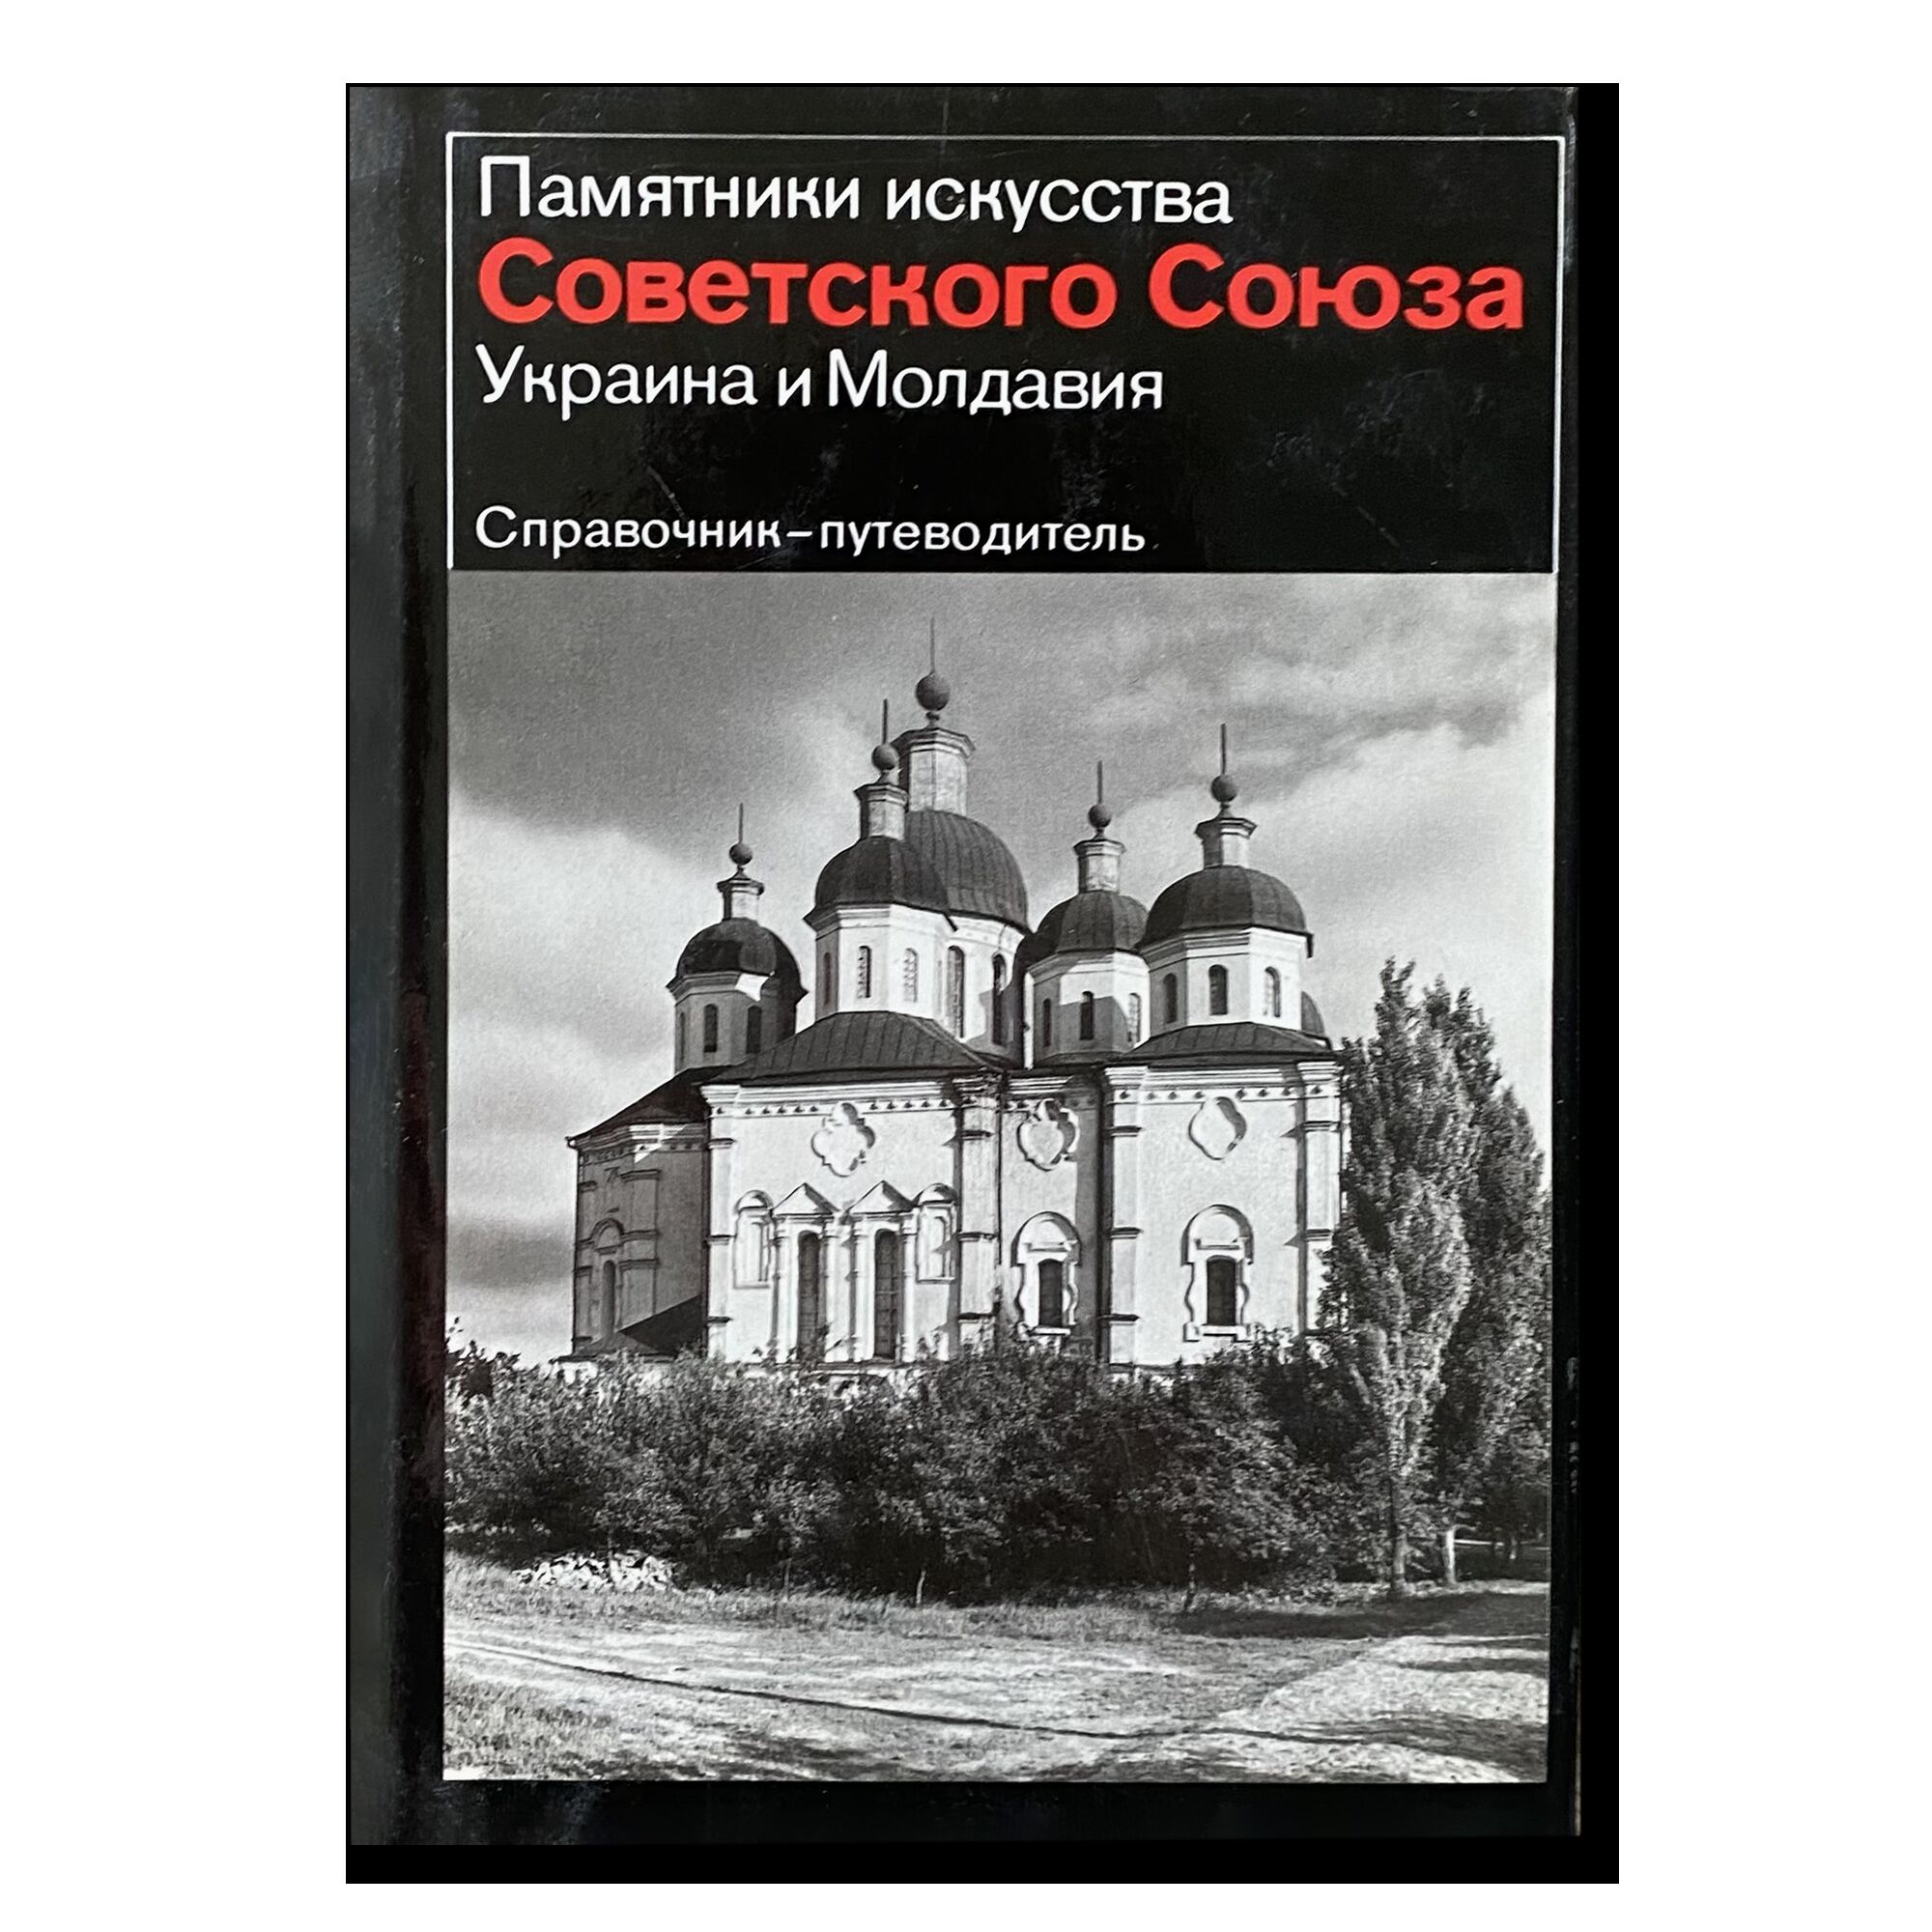 Памятники искусства Советского союза. Украина и Молдавия